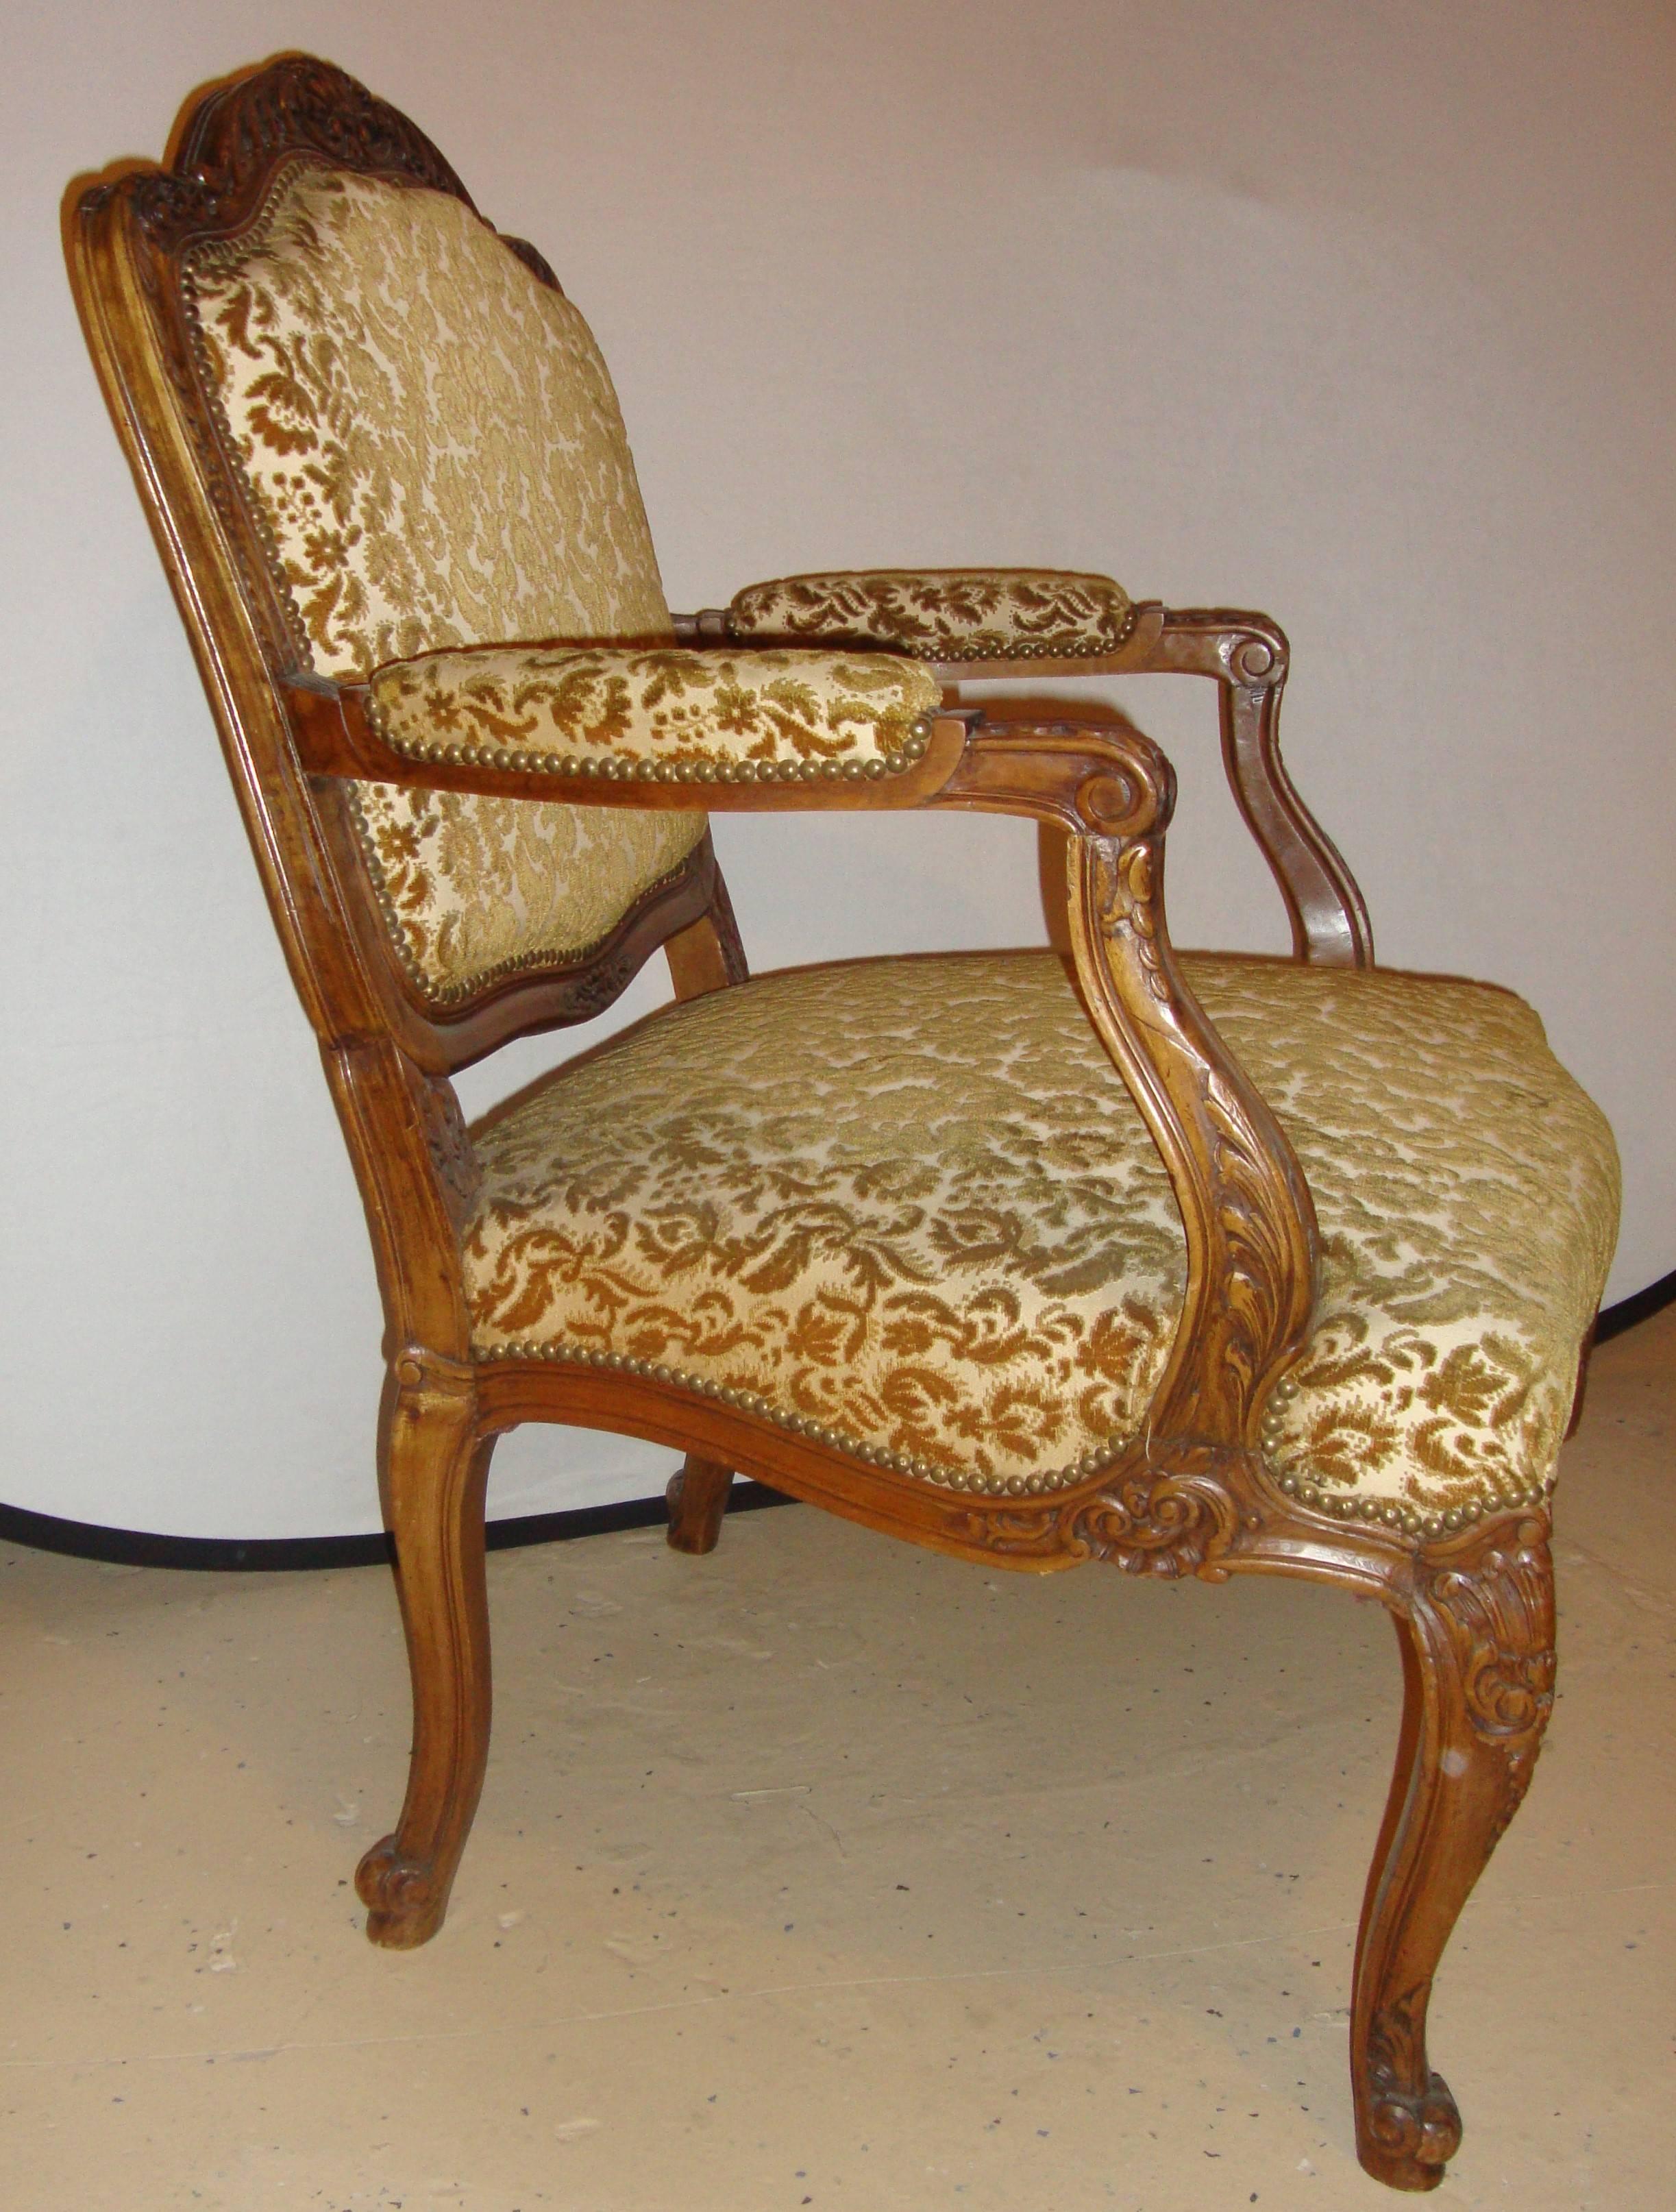 Ein Paar Rokoko-Sessel im Stil von Louis XV mit Schnitzereien. Jeder der massiven und studierten Bergere-Stühle ist im Stil von Louis XV mit Schnitzereien in Form von Schnecken und Muscheln auf einem Nussbaumgestell gestaltet.